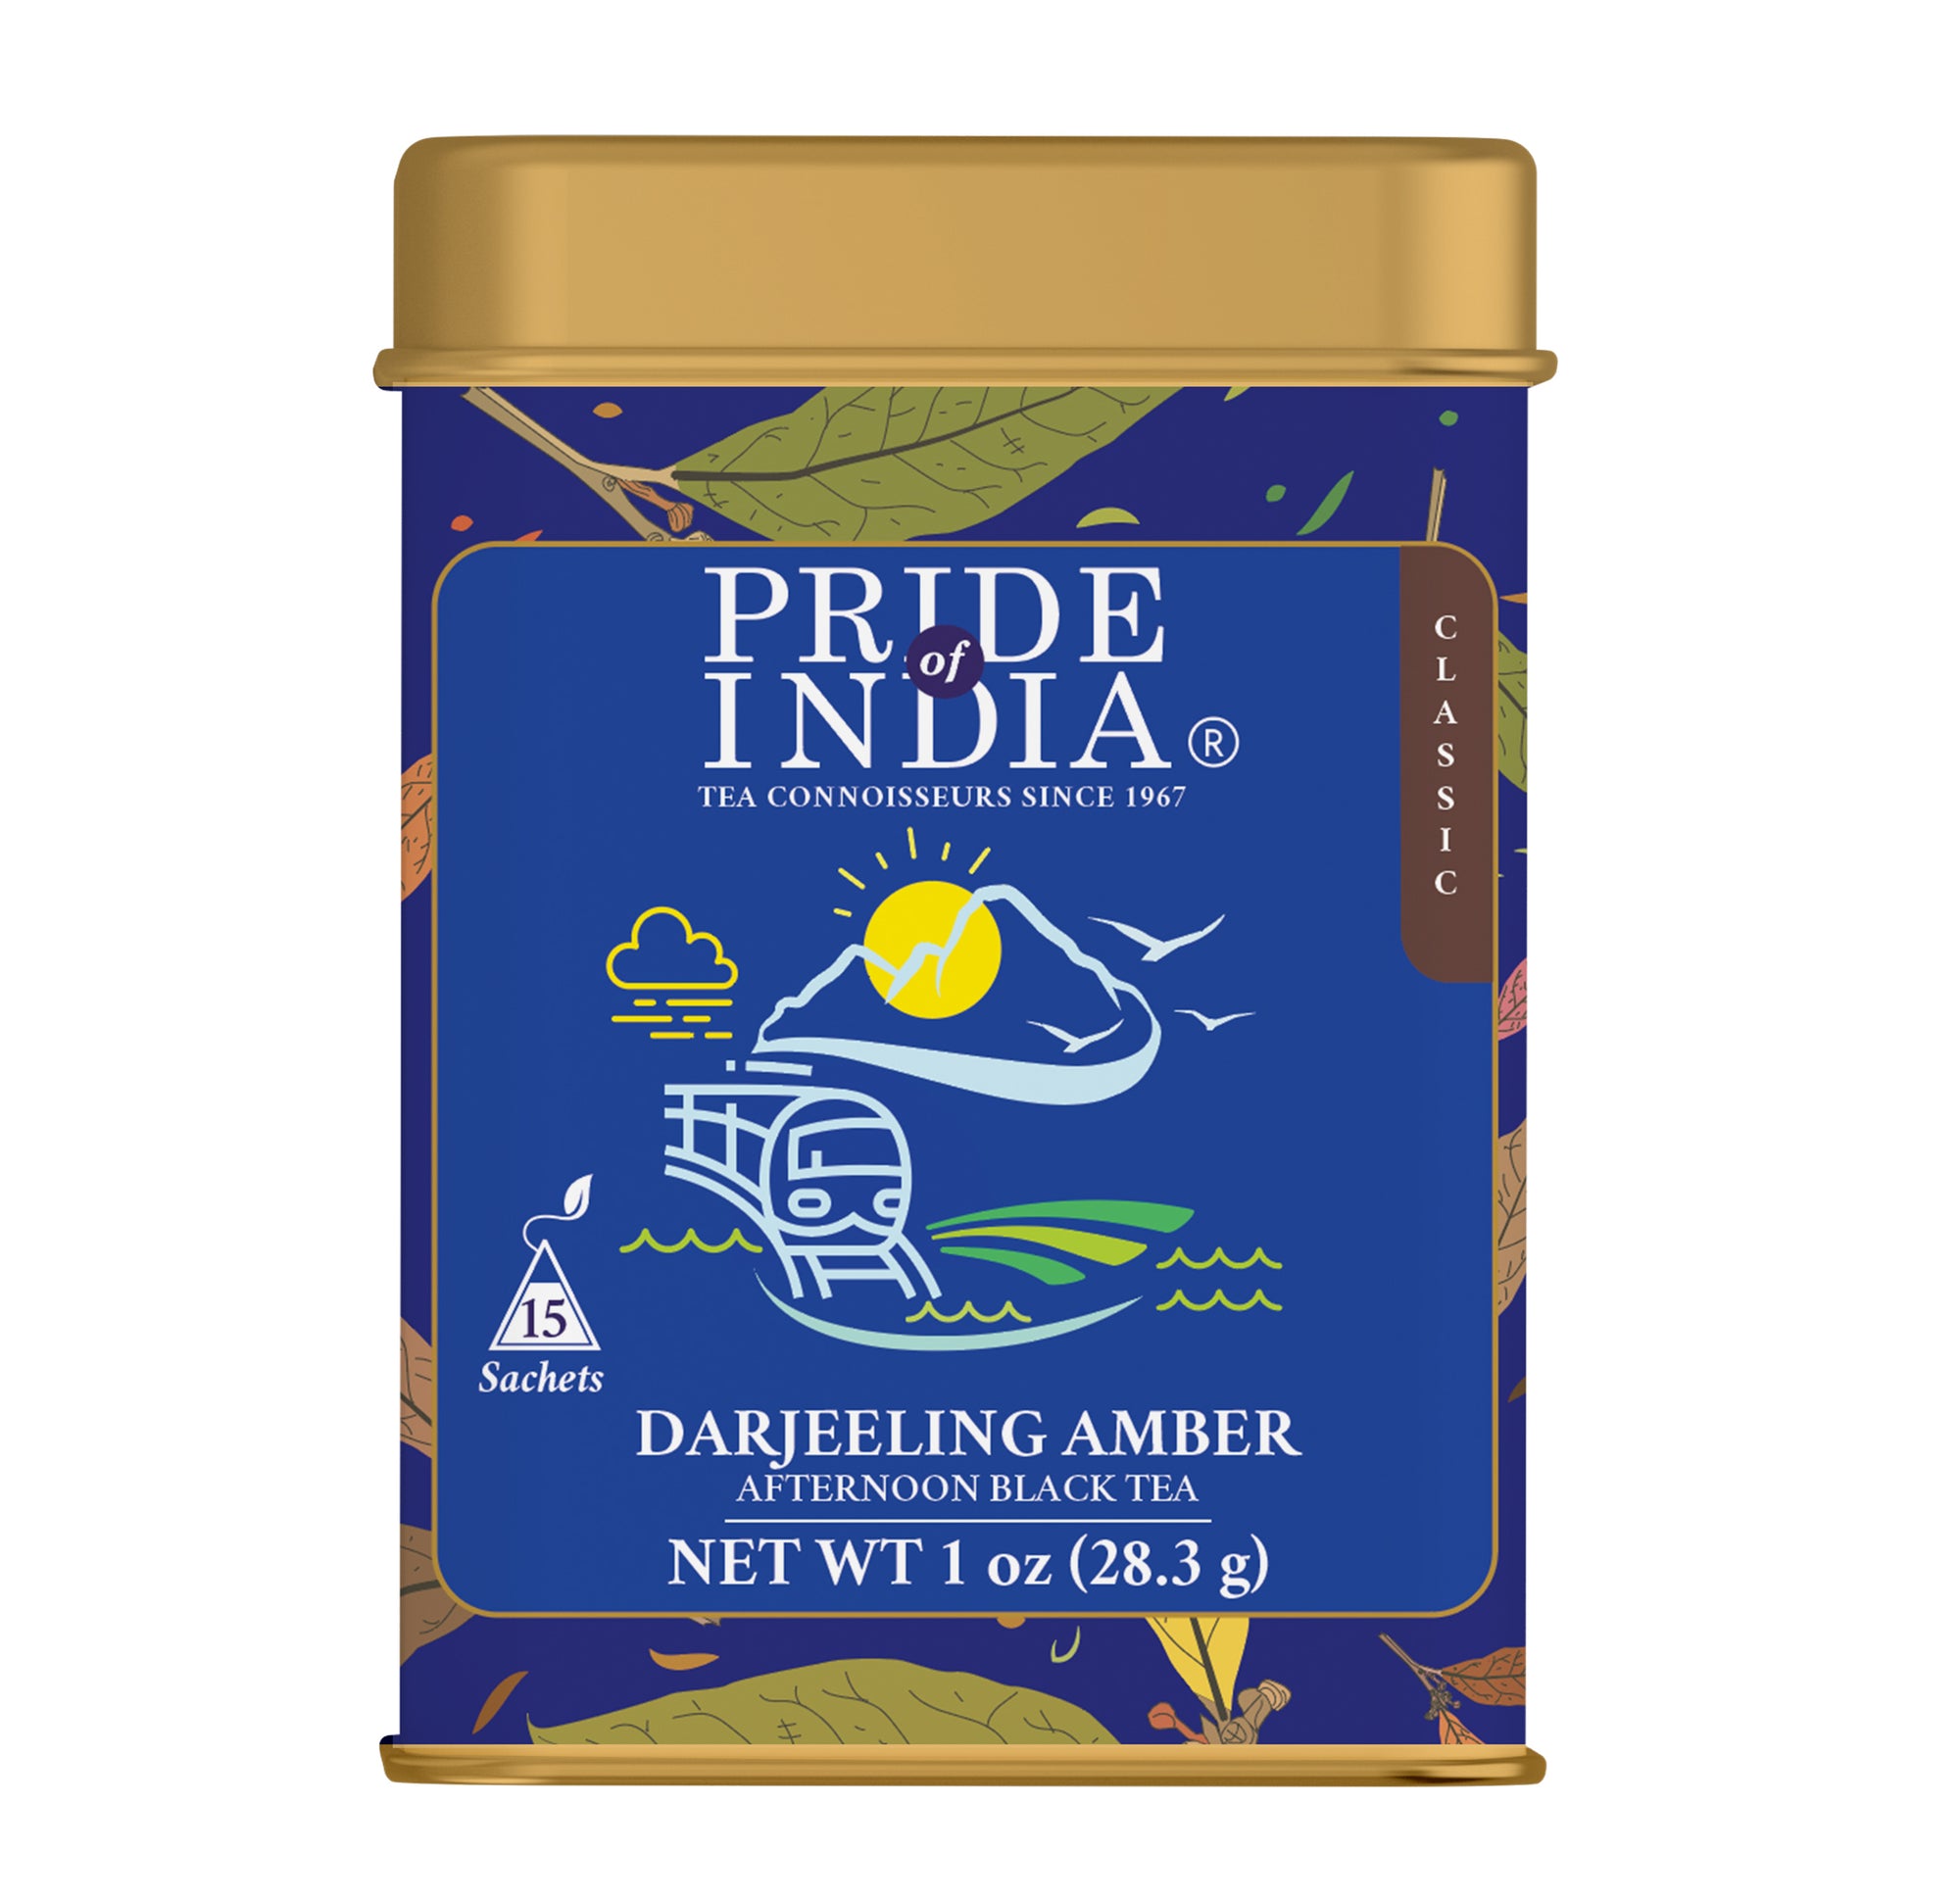 Darjeeling Amber - Afternoon Black Tea Bags - Pride Of India